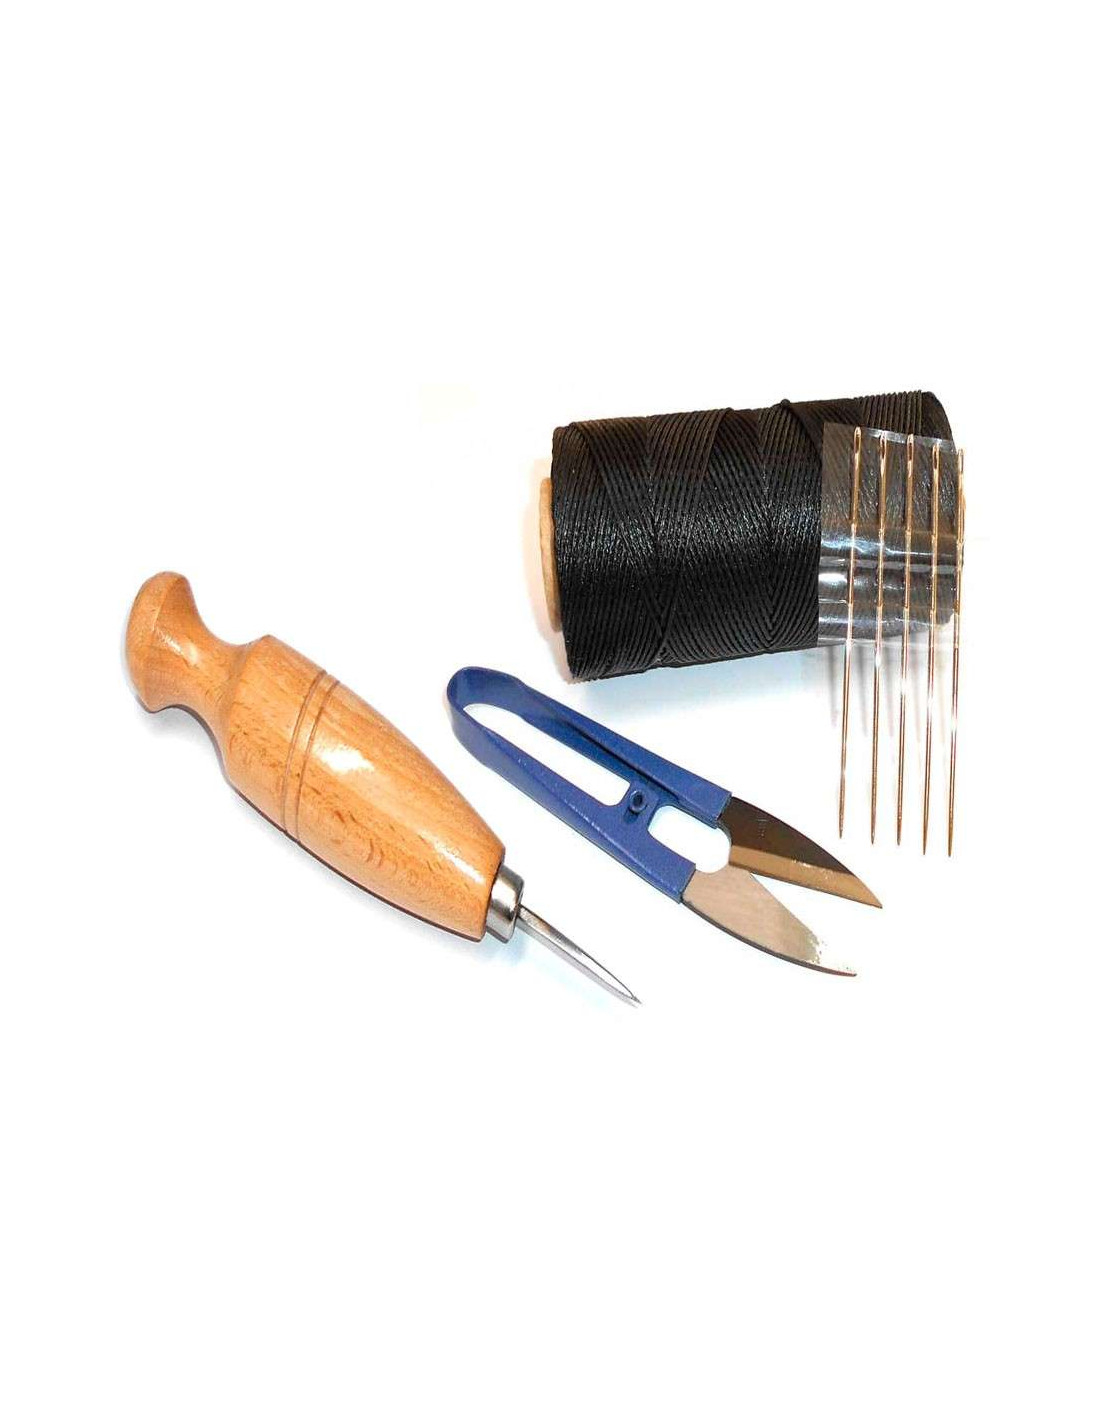 Kit herramientas para coser cuero a mano